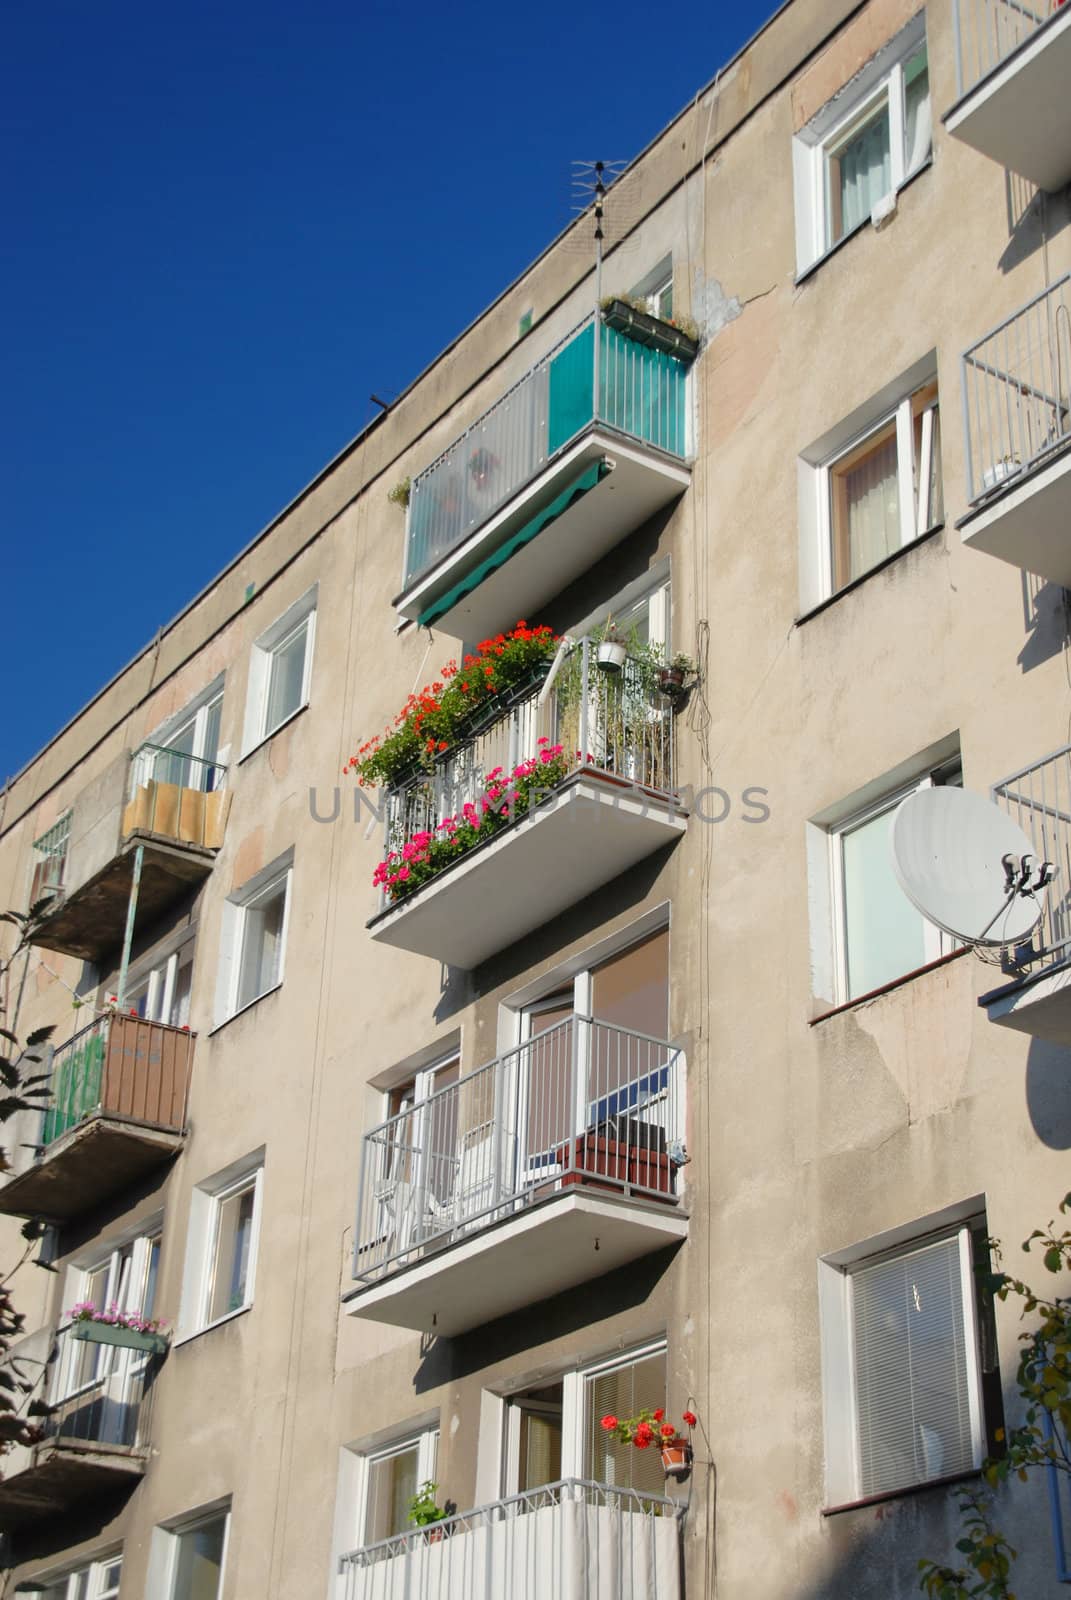 Renovated balconies in multi-family building. by wojciechkozlowski